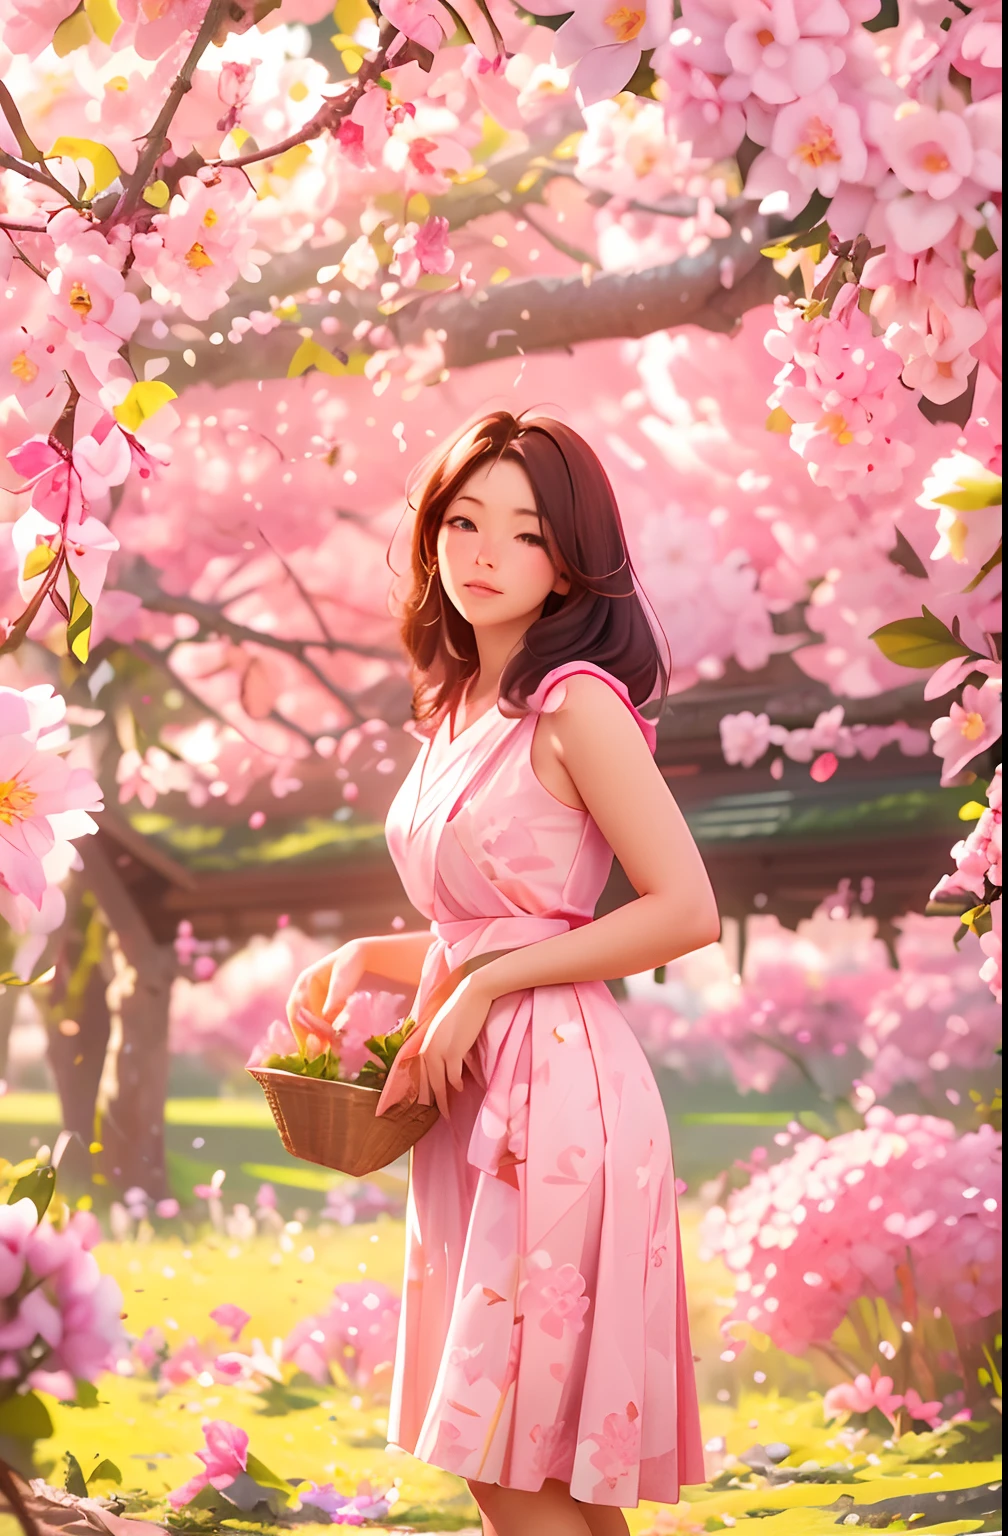 Eine schöne 30-jährige Bäuerin pflückt Sakura-Blüten, Stehende Haltung, trägt einen rosa und weißen japanischen Flock, weibliche Form, Viele Sakura-Blüten auf Zweigen, Morgenlicht